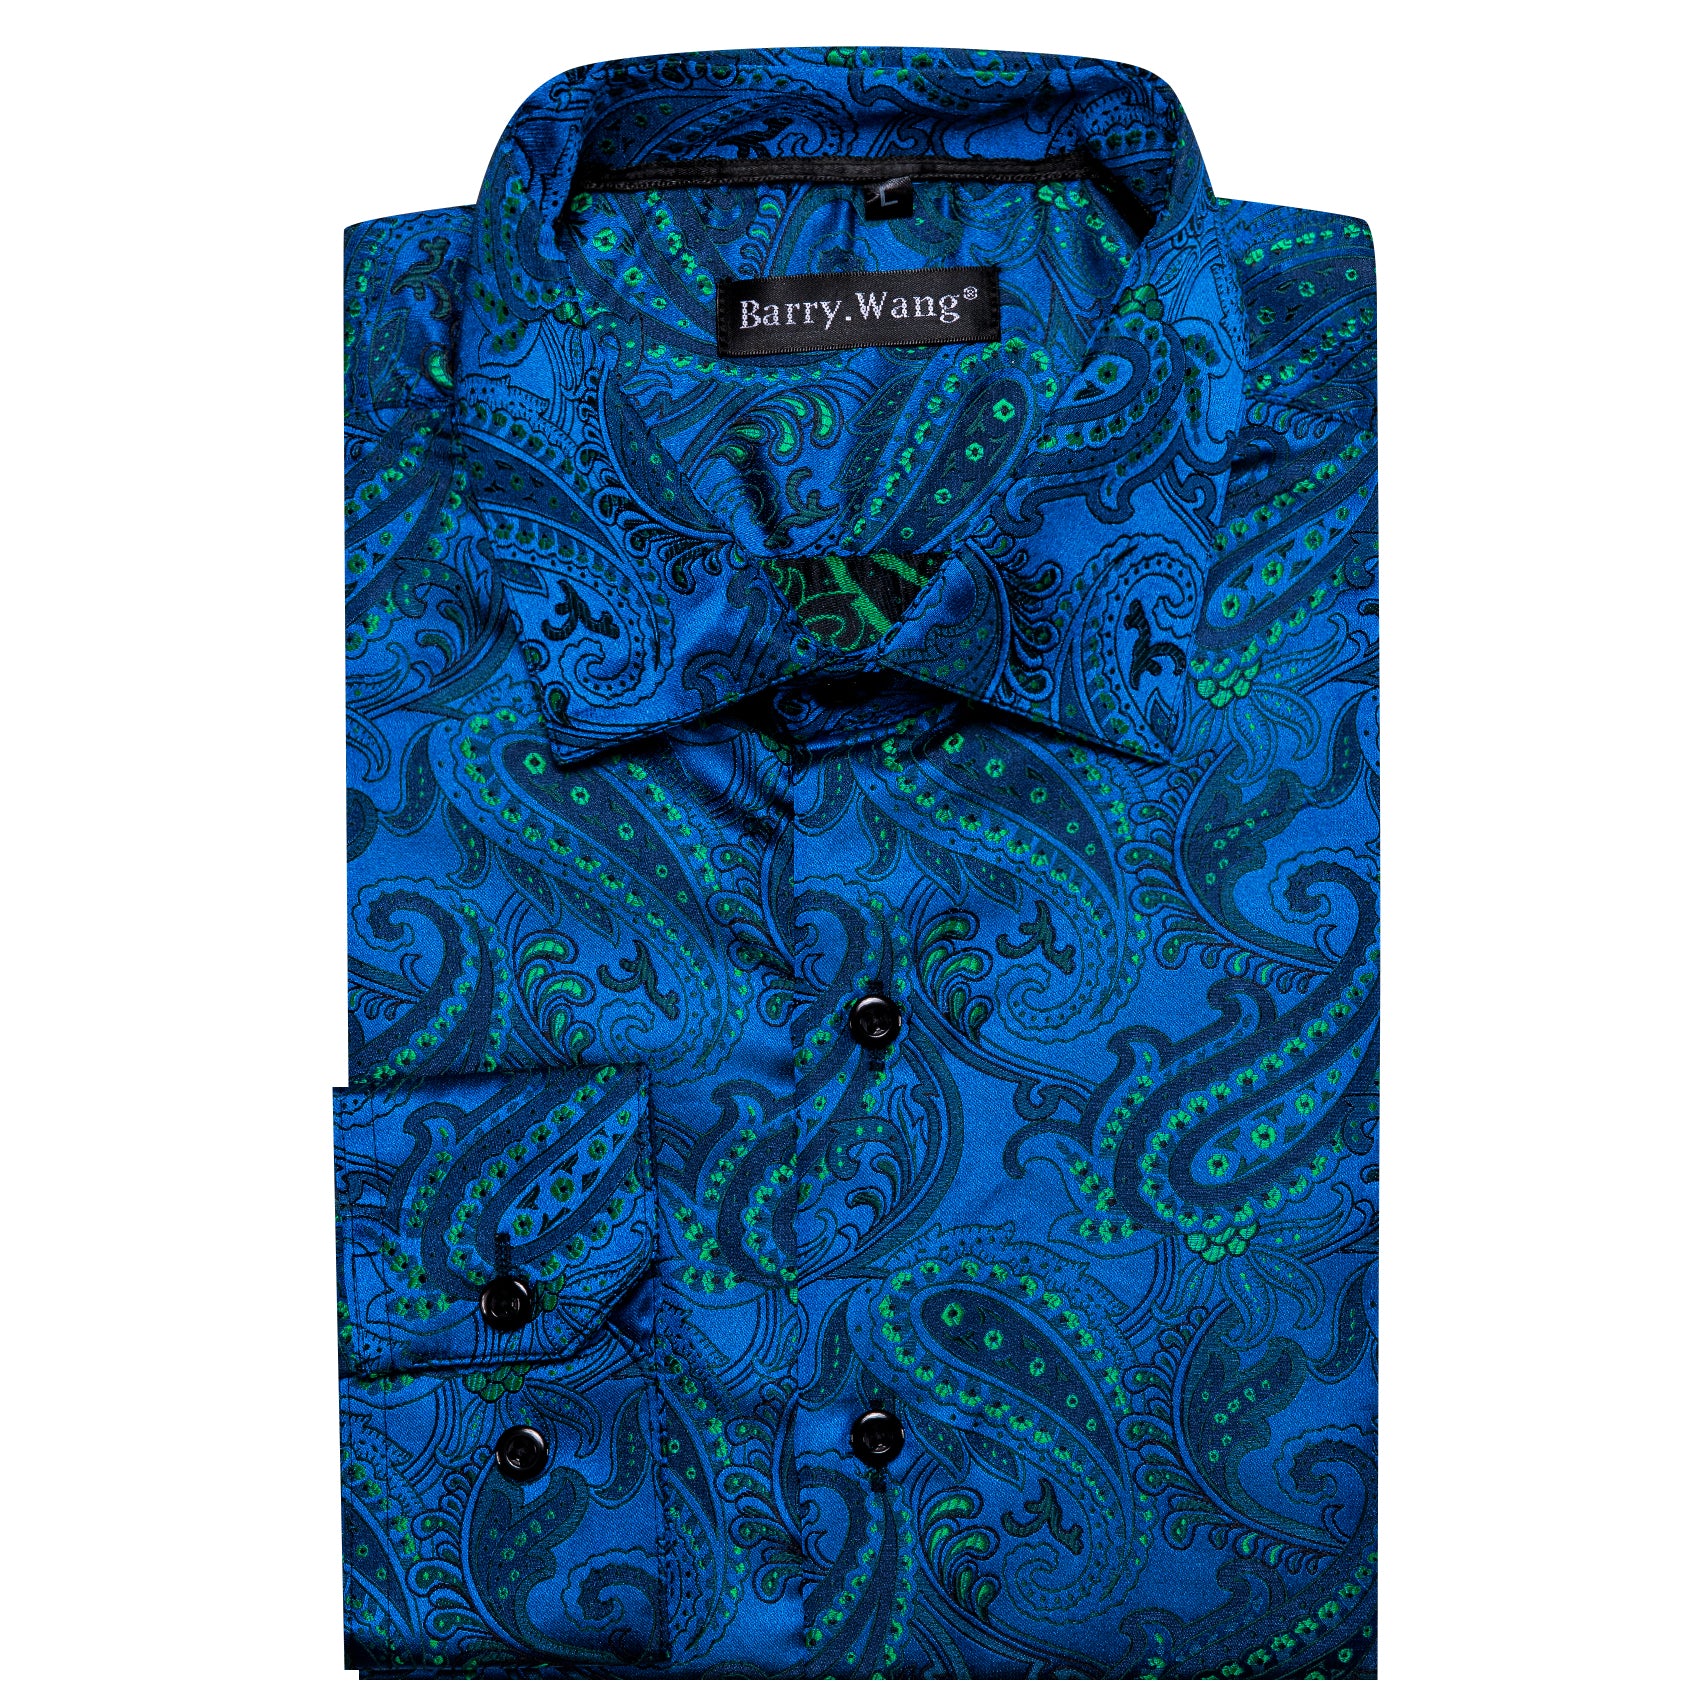 Barry.wang Peacock Blue Green Floral Silk Men's Shirt